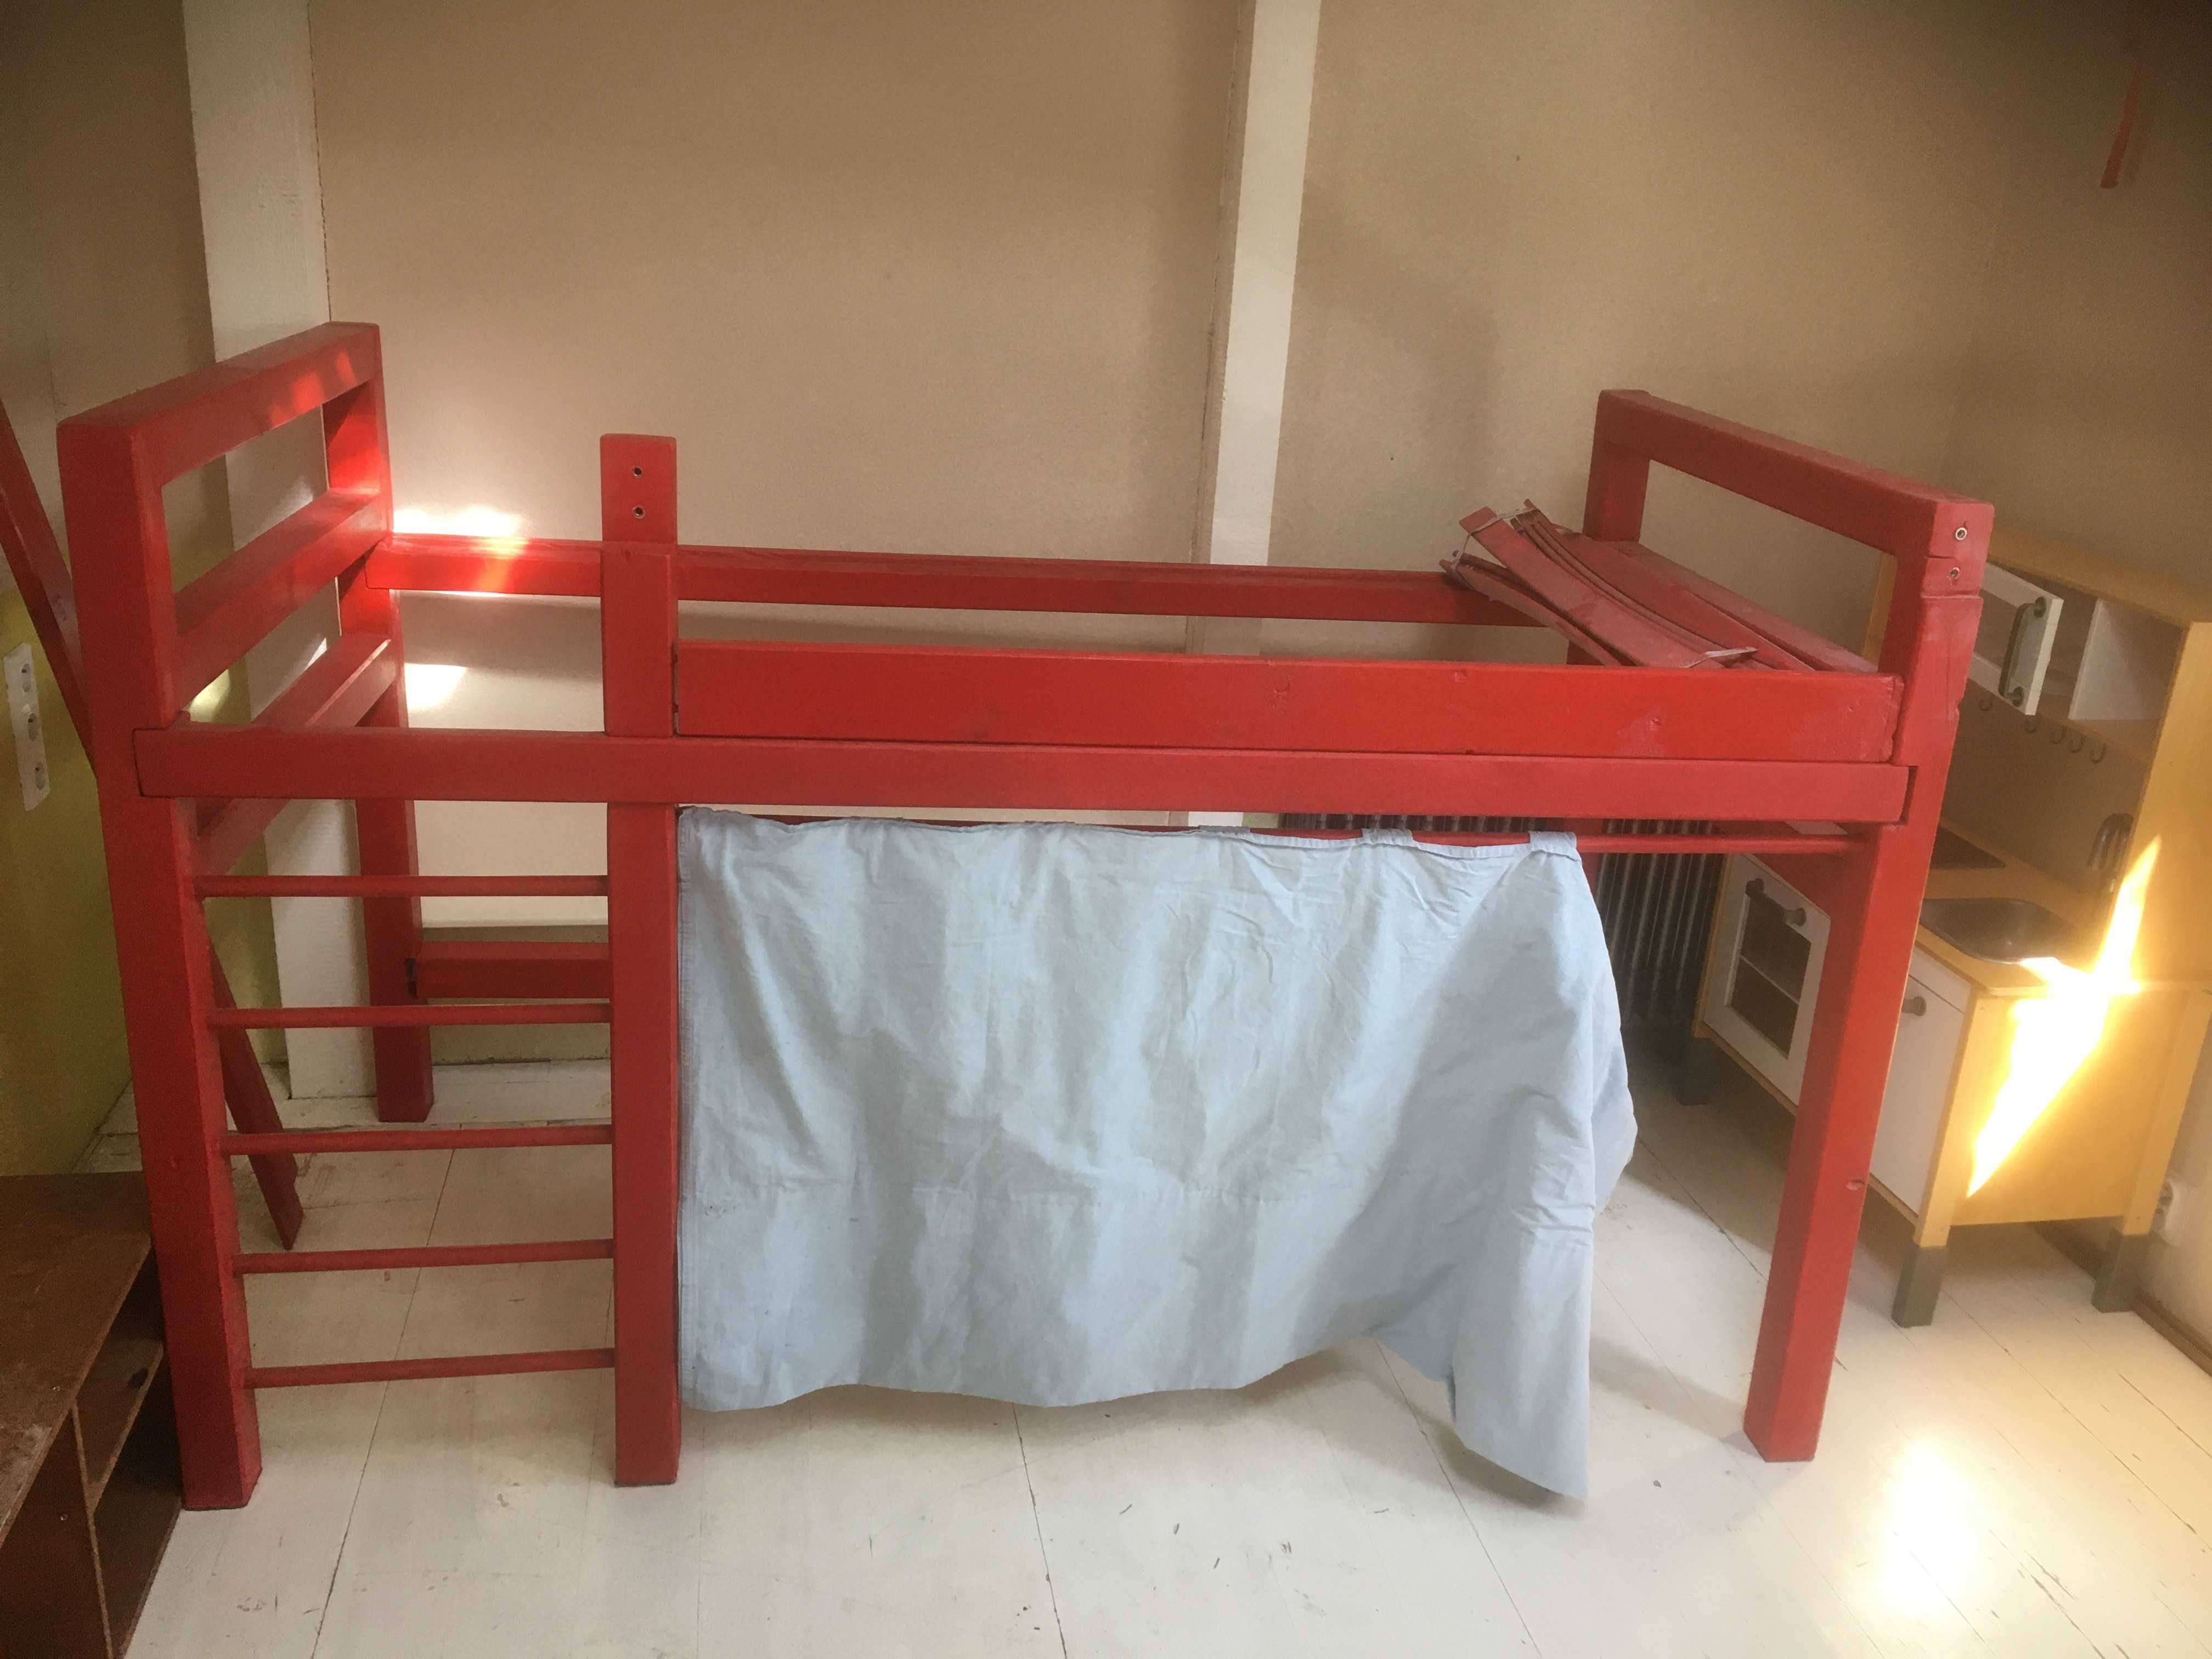 Własnoręczne dużo łóżko piętrowe - 200x90 - unikat, łatwy transport